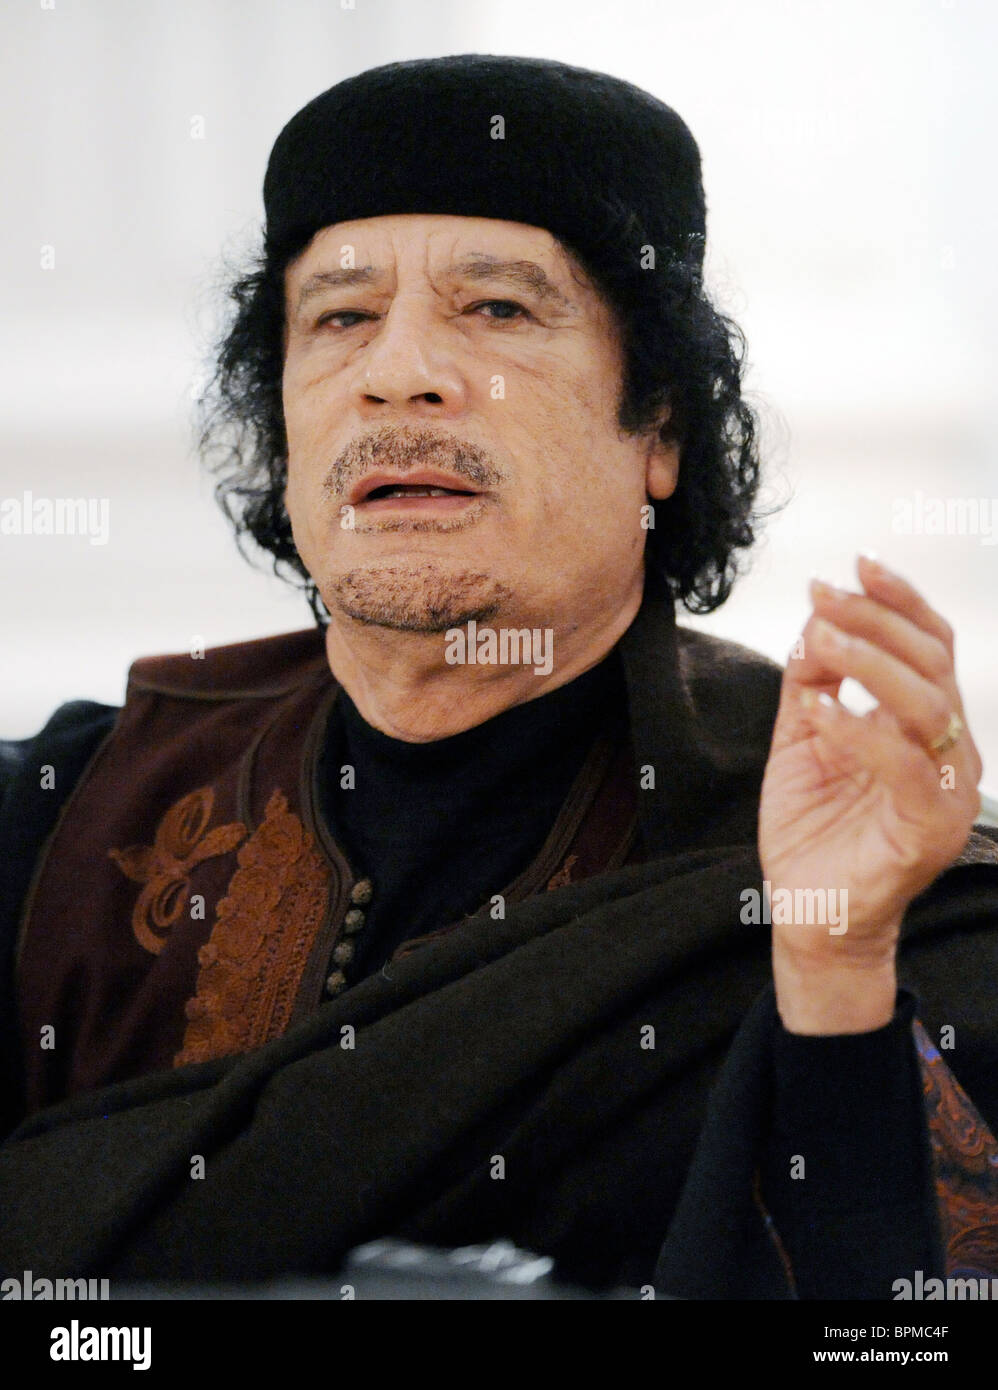 Gaddafi muammar Gaddafi's last